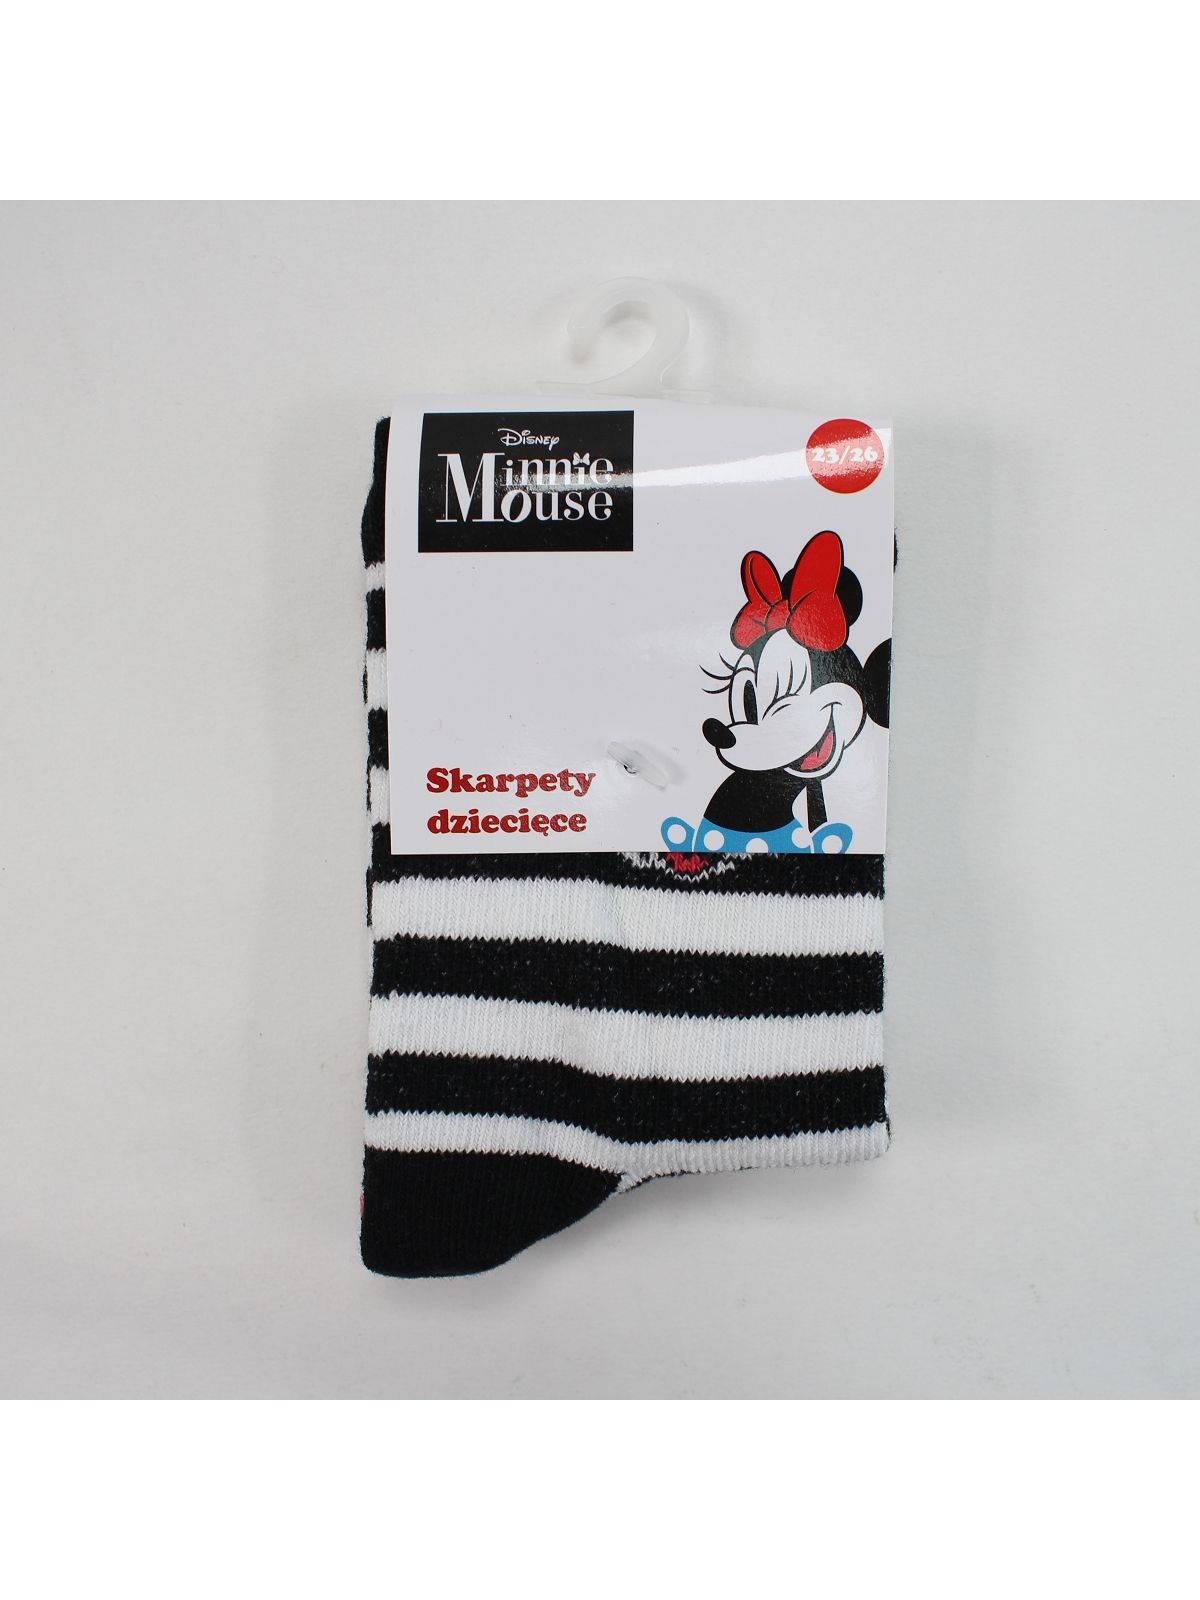 Minnie Par de calcetines